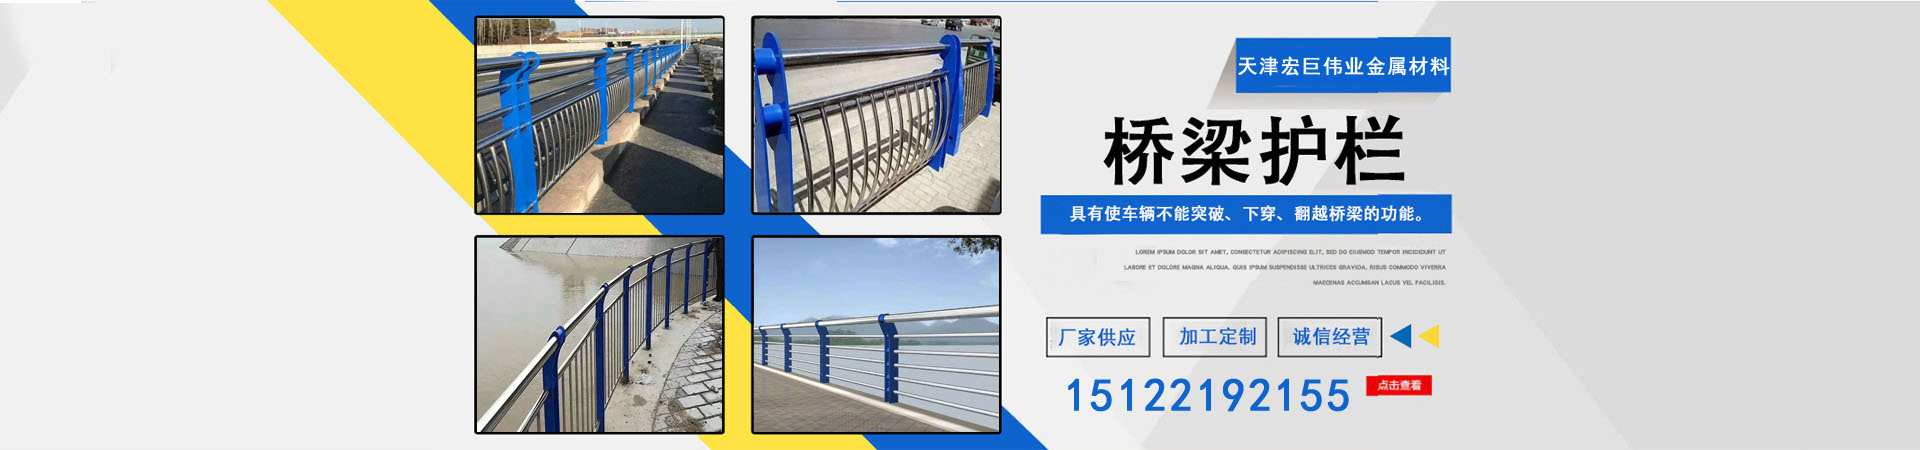 【交通护栏】、台湾本地【交通护栏】、台湾、台湾【交通护栏】